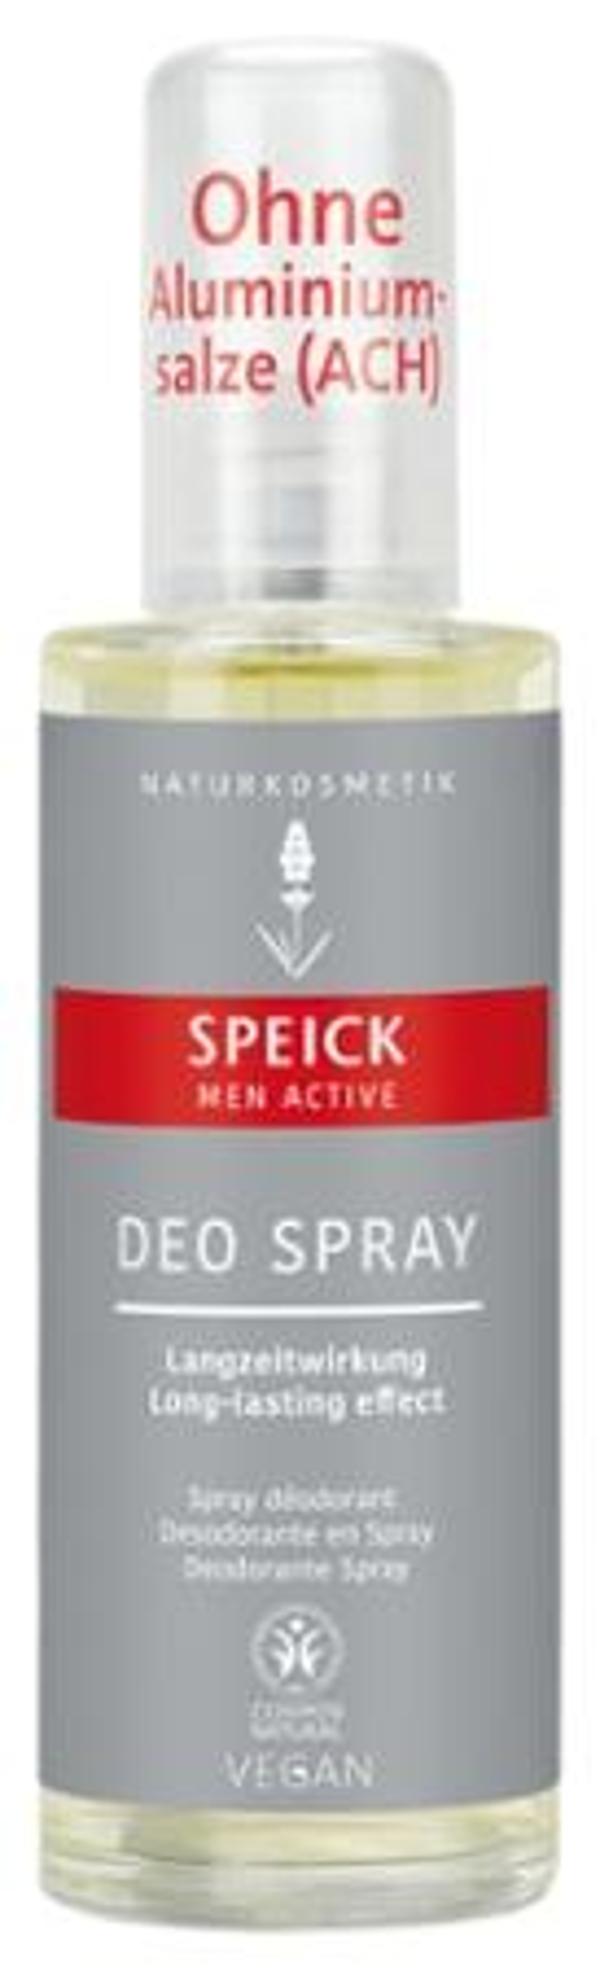 Produktfoto zu Men Active Deo Spray - 75ml